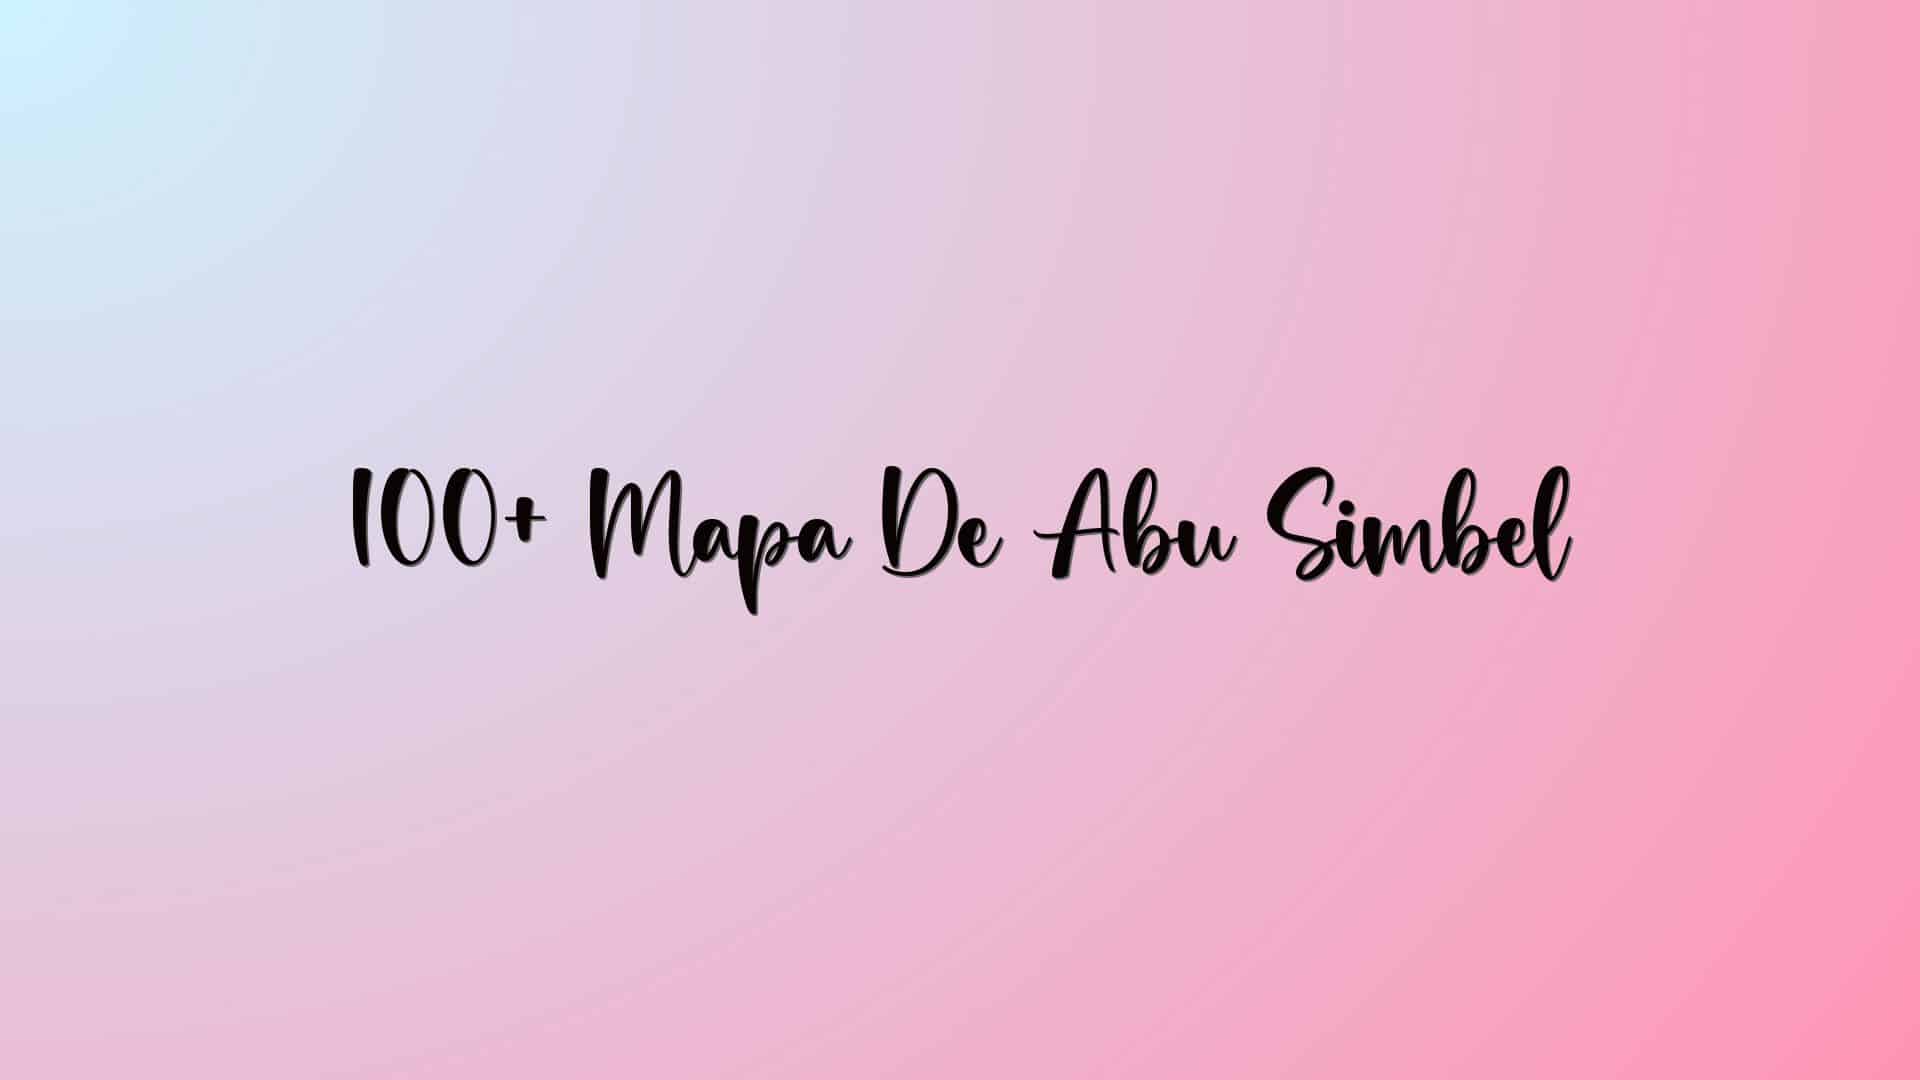 100+ Mapa De Abu Simbel